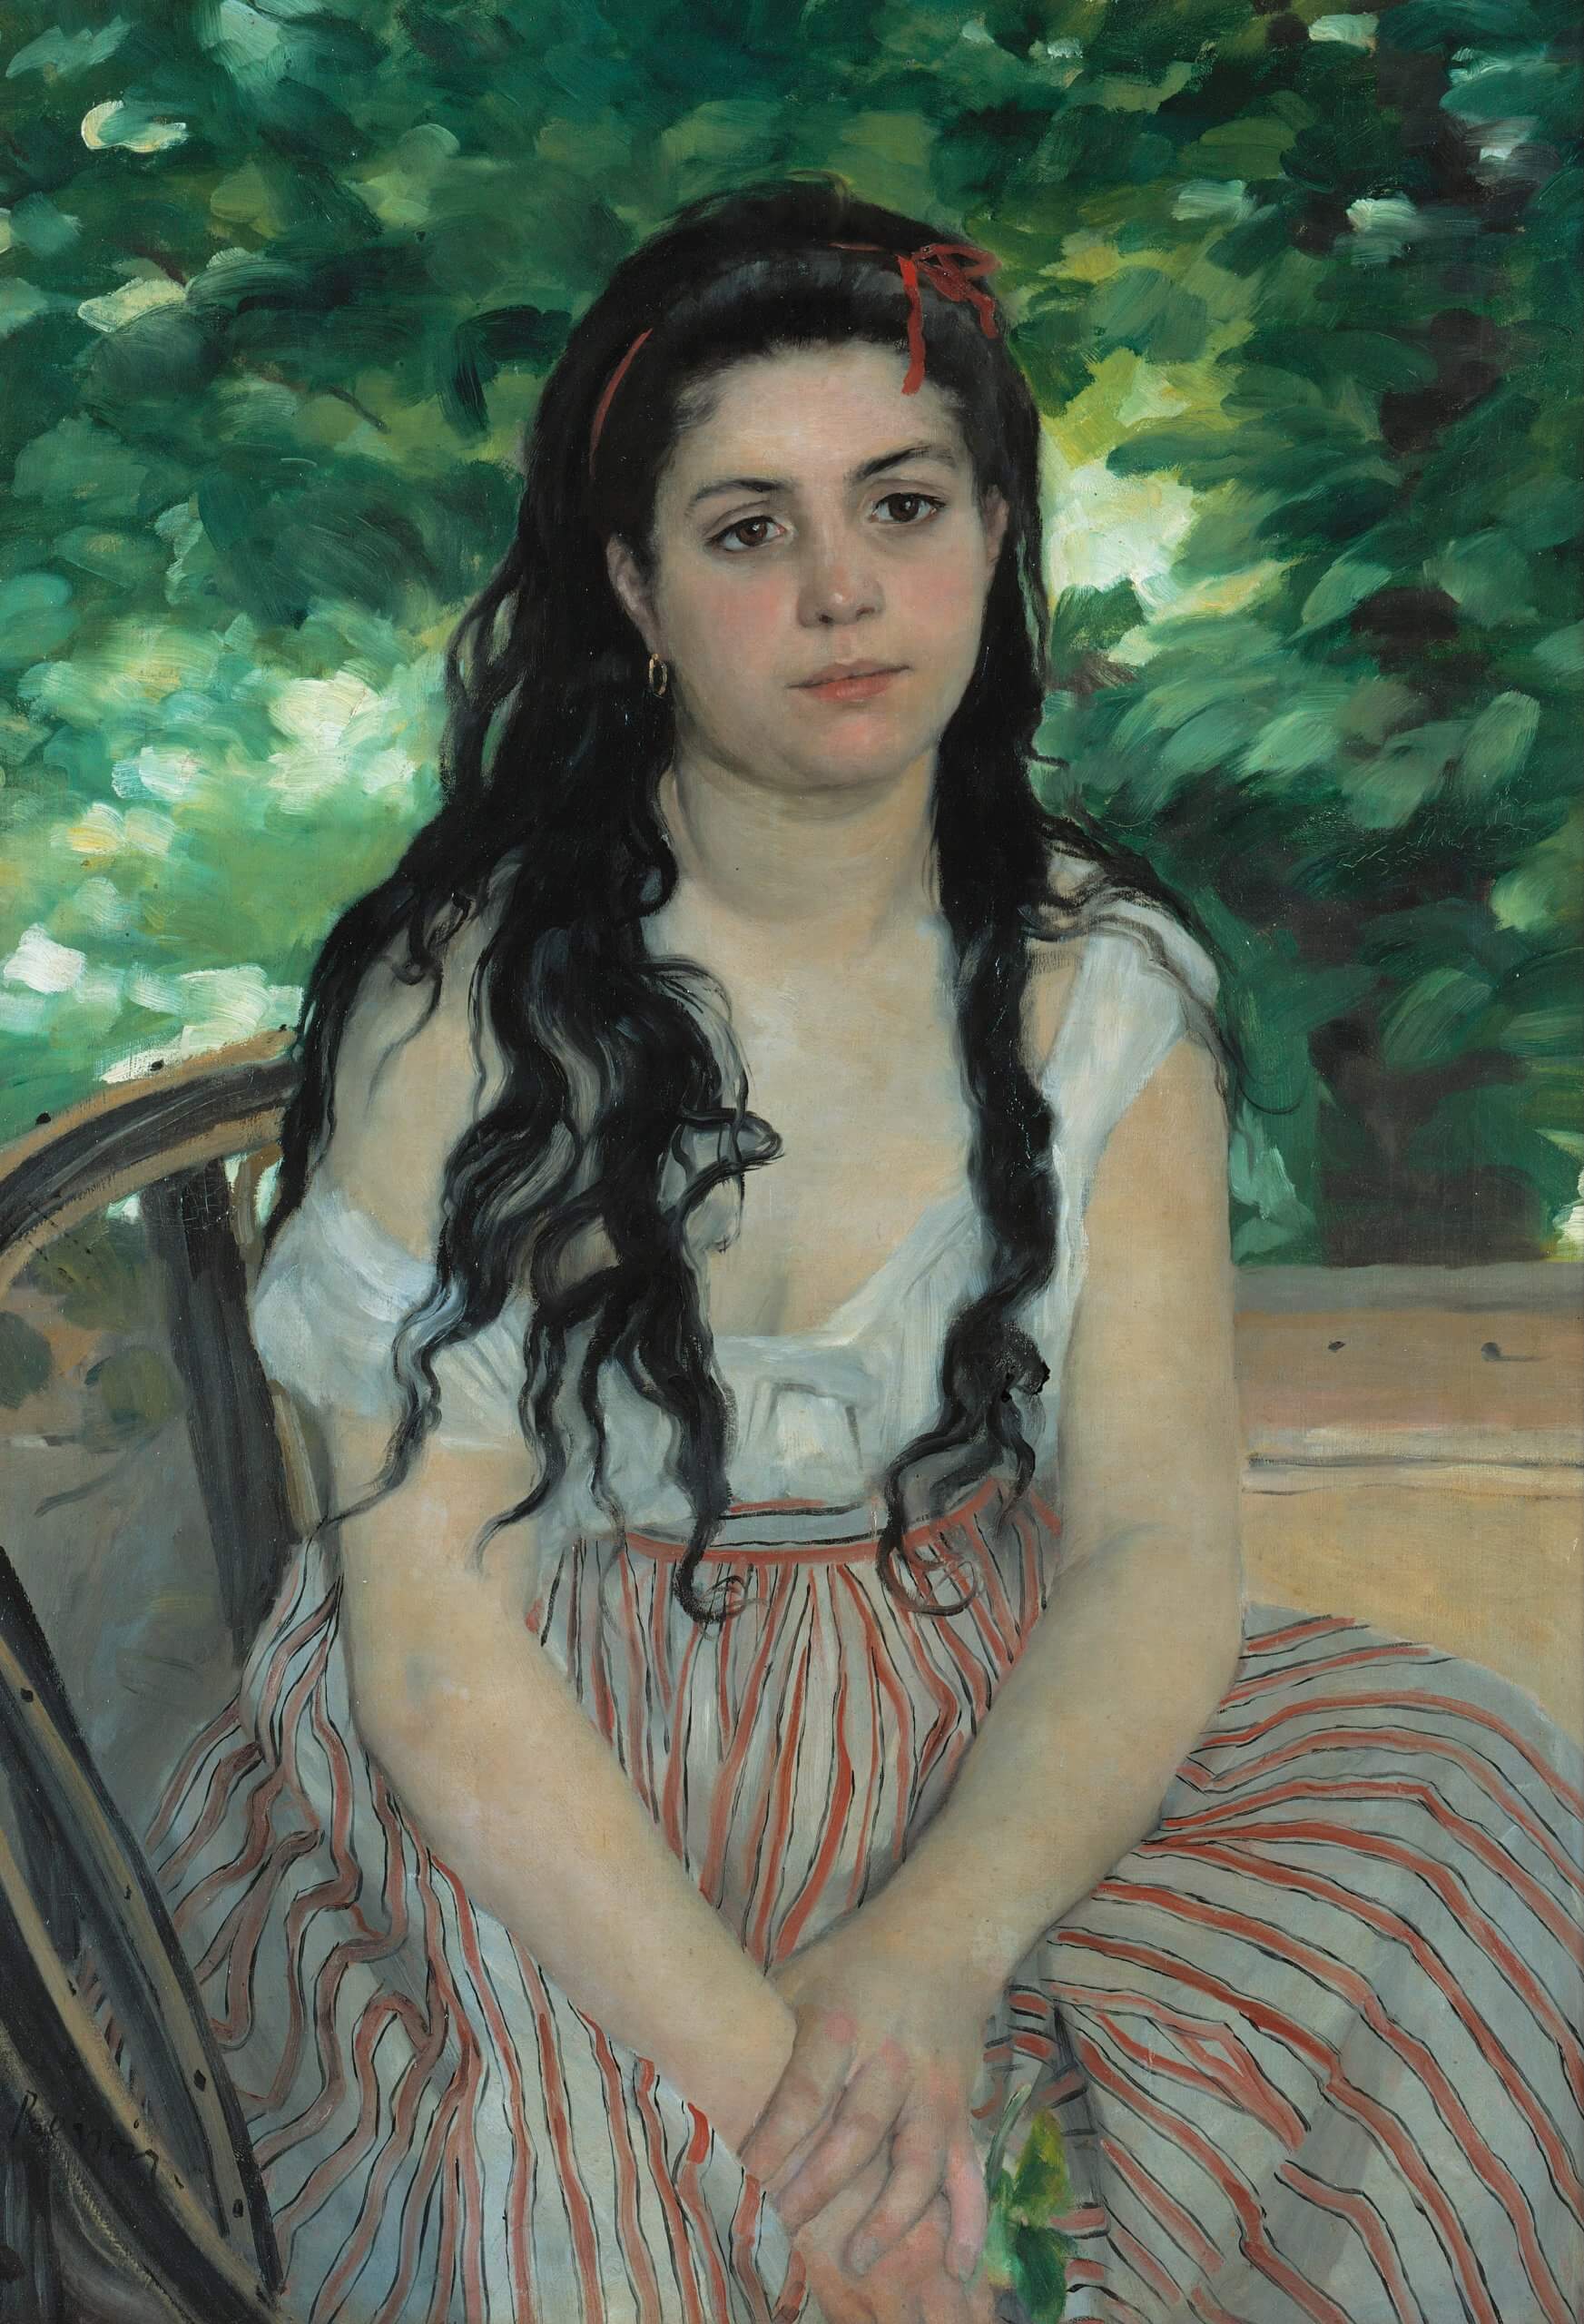 Auguste_Renoir_-_En_ete_-_La_bohemienne_-_Google_Art_Project